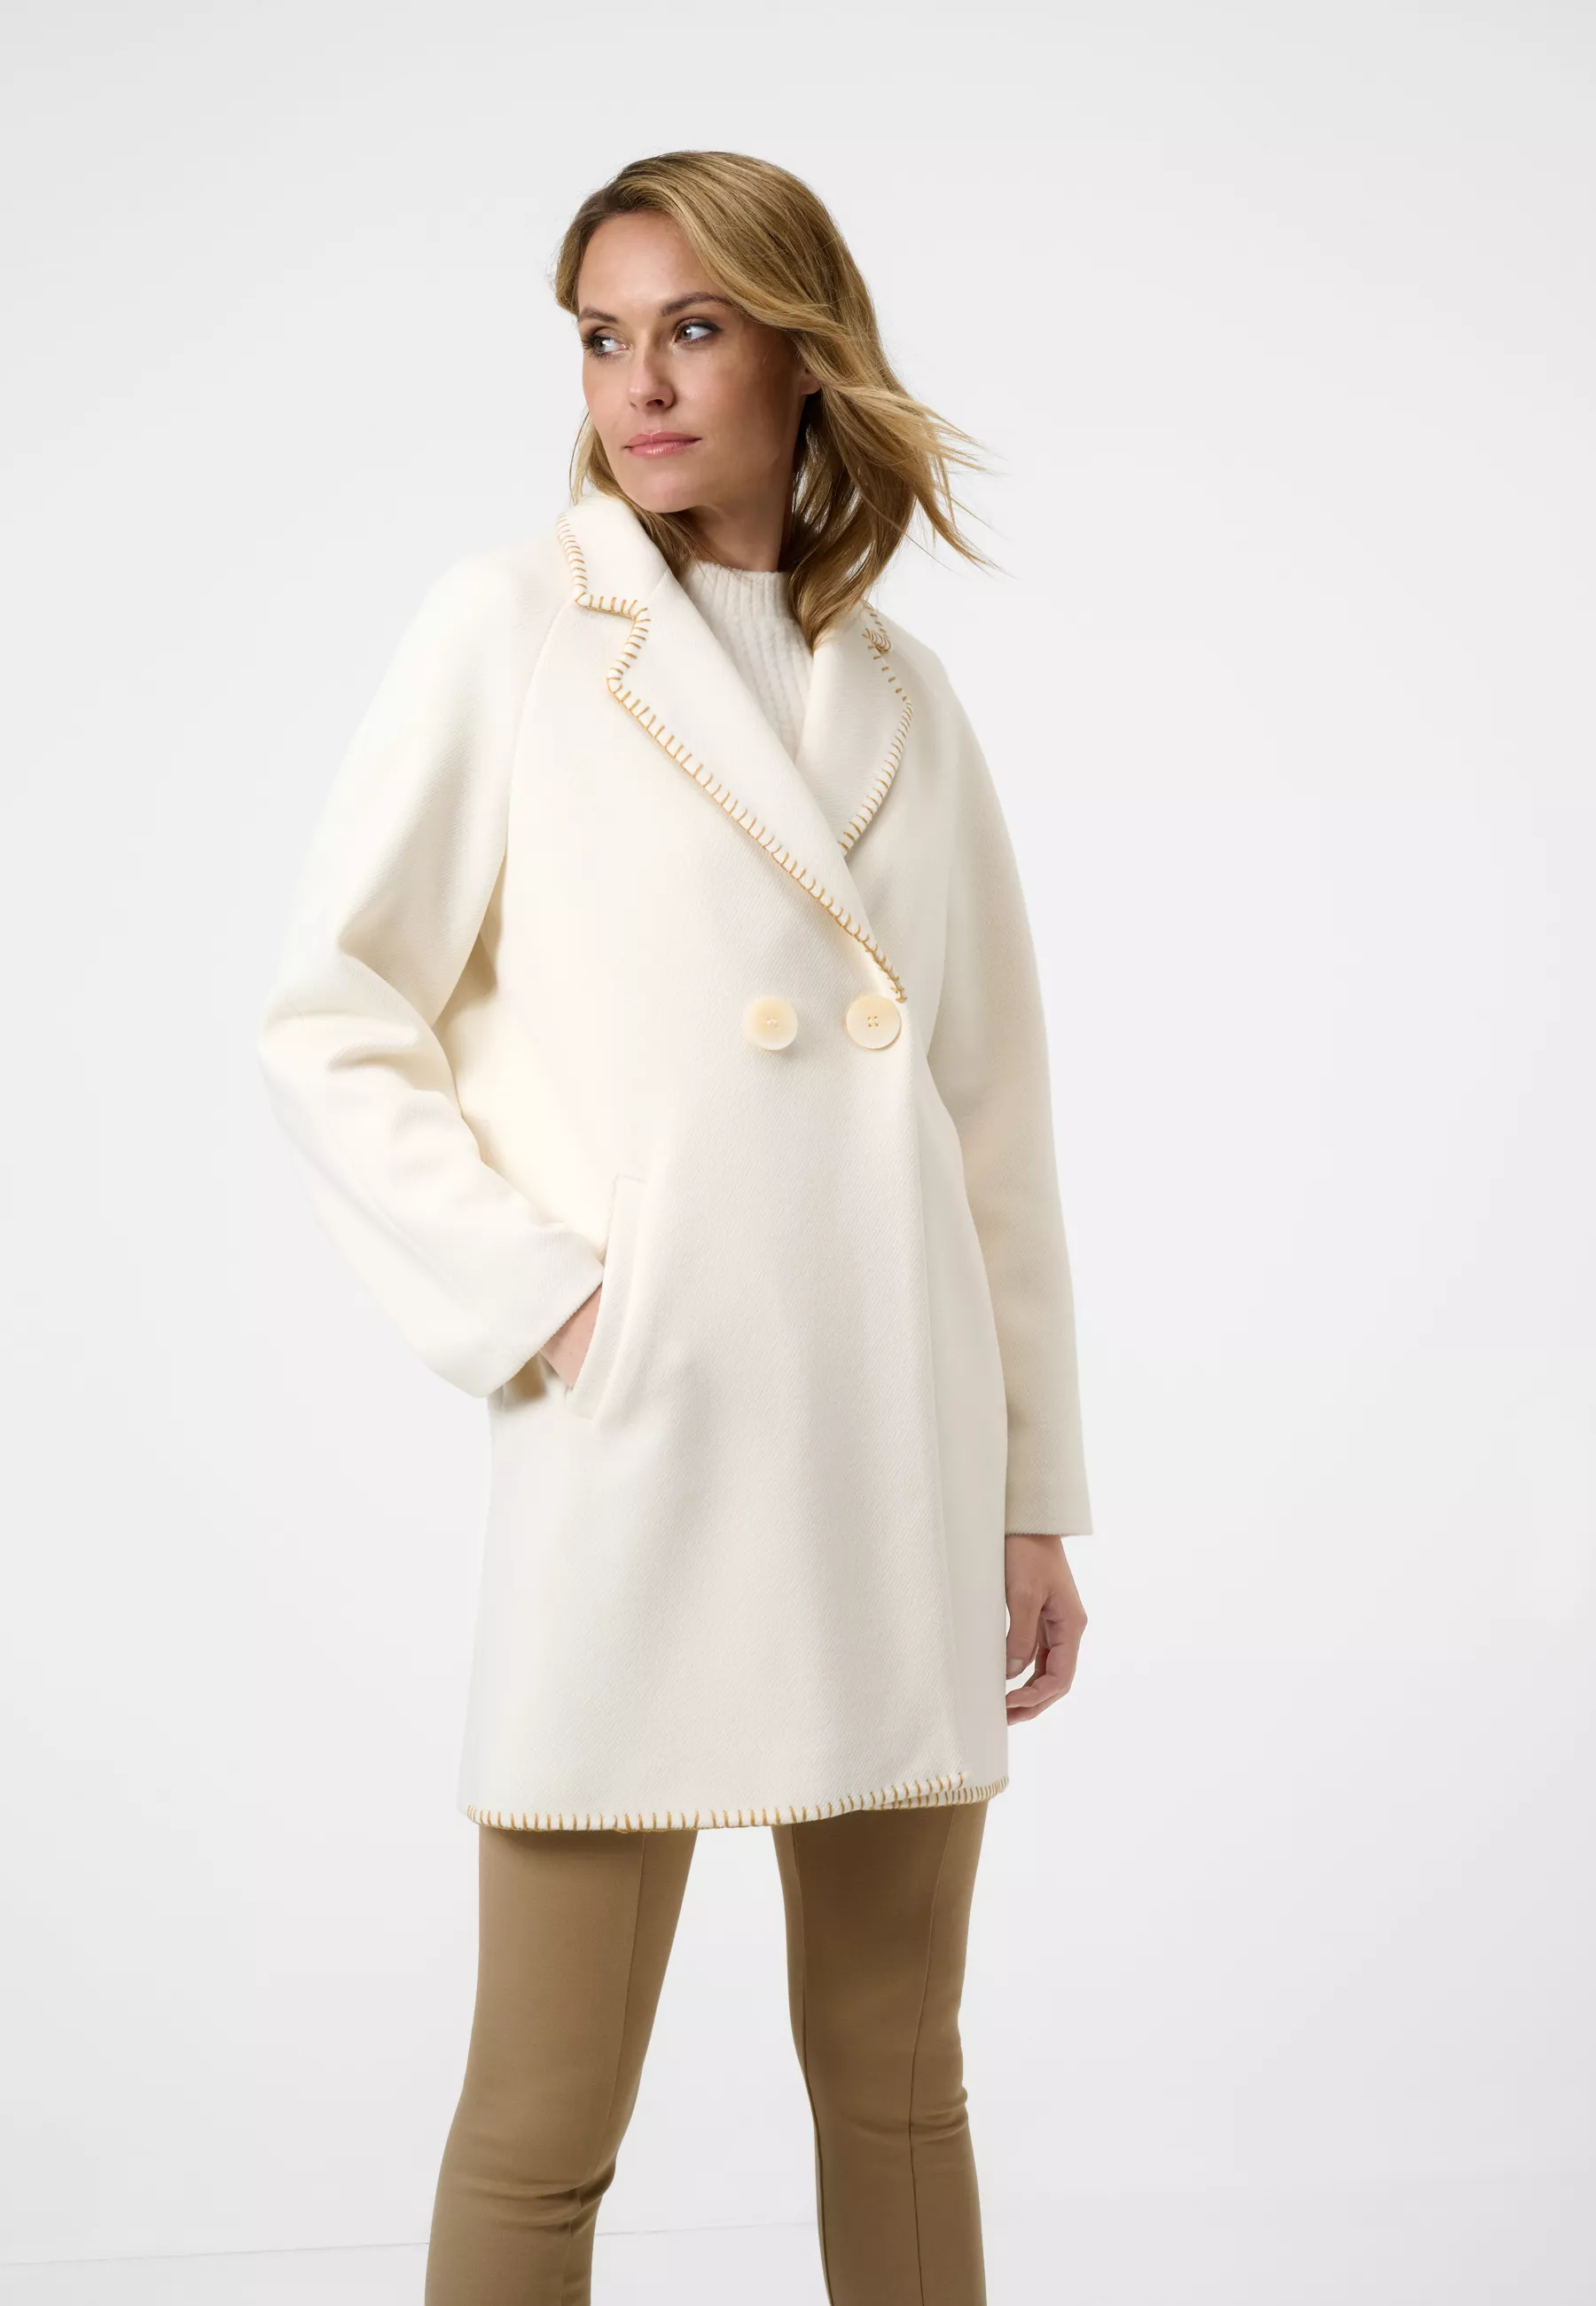 Damen Textil Mantel Silvia in Weiß von Ricano, Frontansicht am Model